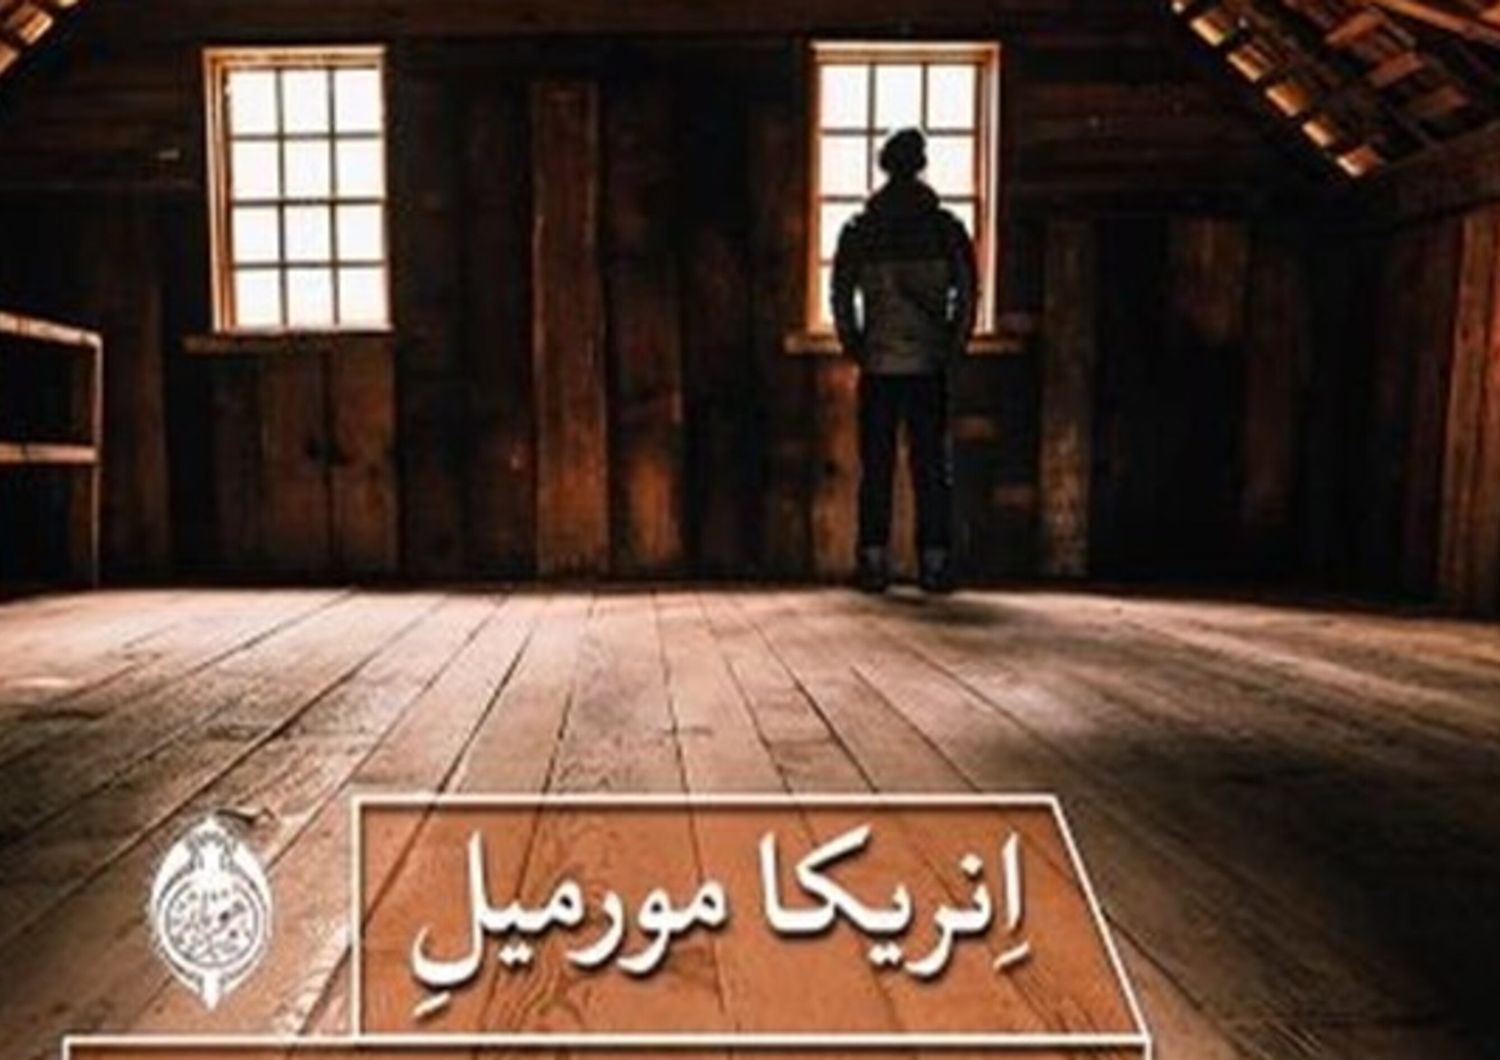 Copertina "Una vita nascosta" - traduzione in persiano